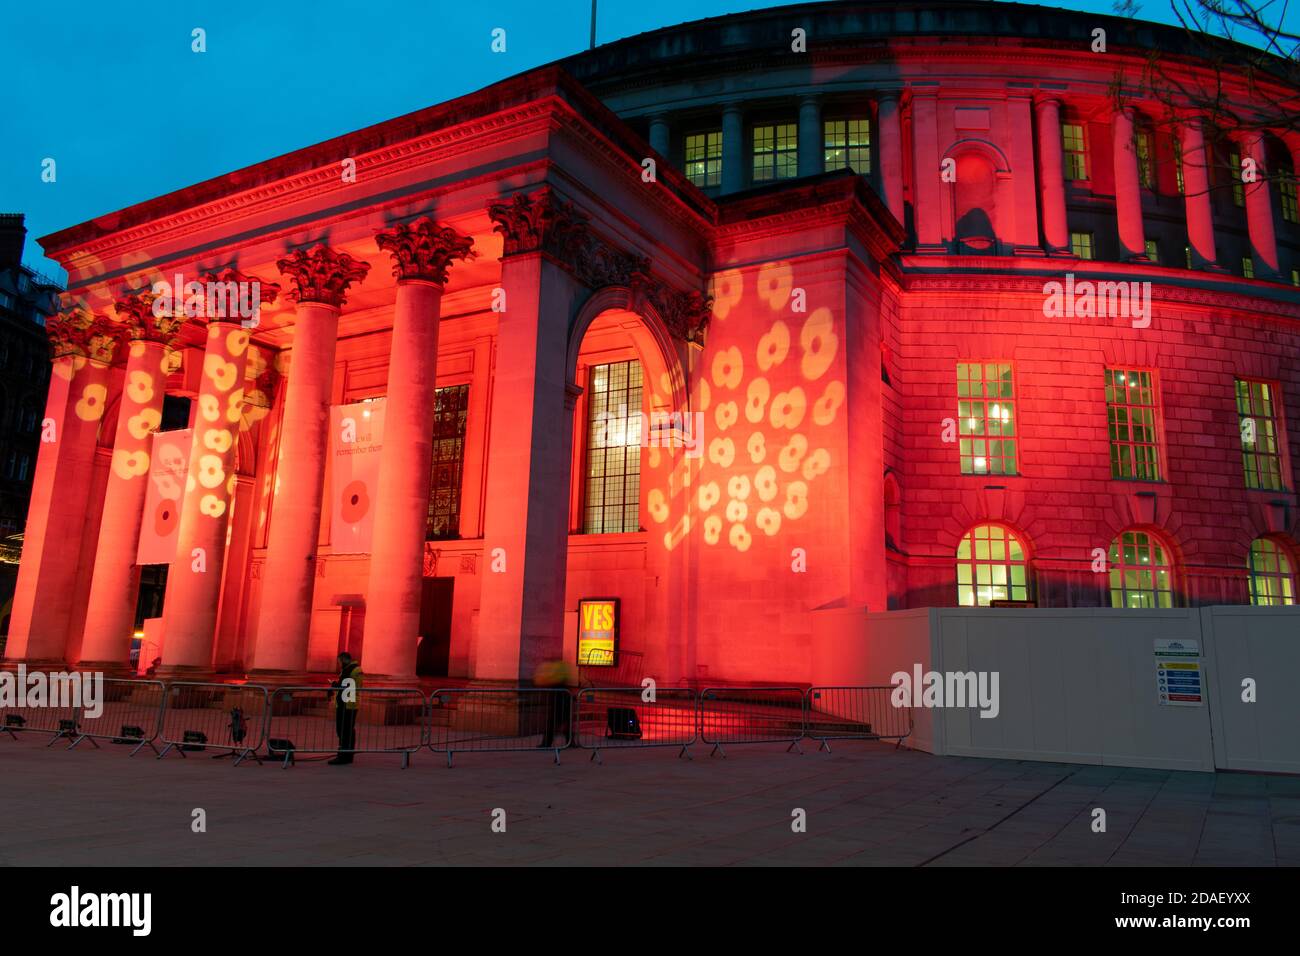 Waffenstillstandstag Gedenkfeier während der Aussperrung. Manchester Central Library, UK beleuchtet mit rotem Licht und Mohn-Design. Verschwommene Menschen. Öffentliches Gebäude Stockfoto